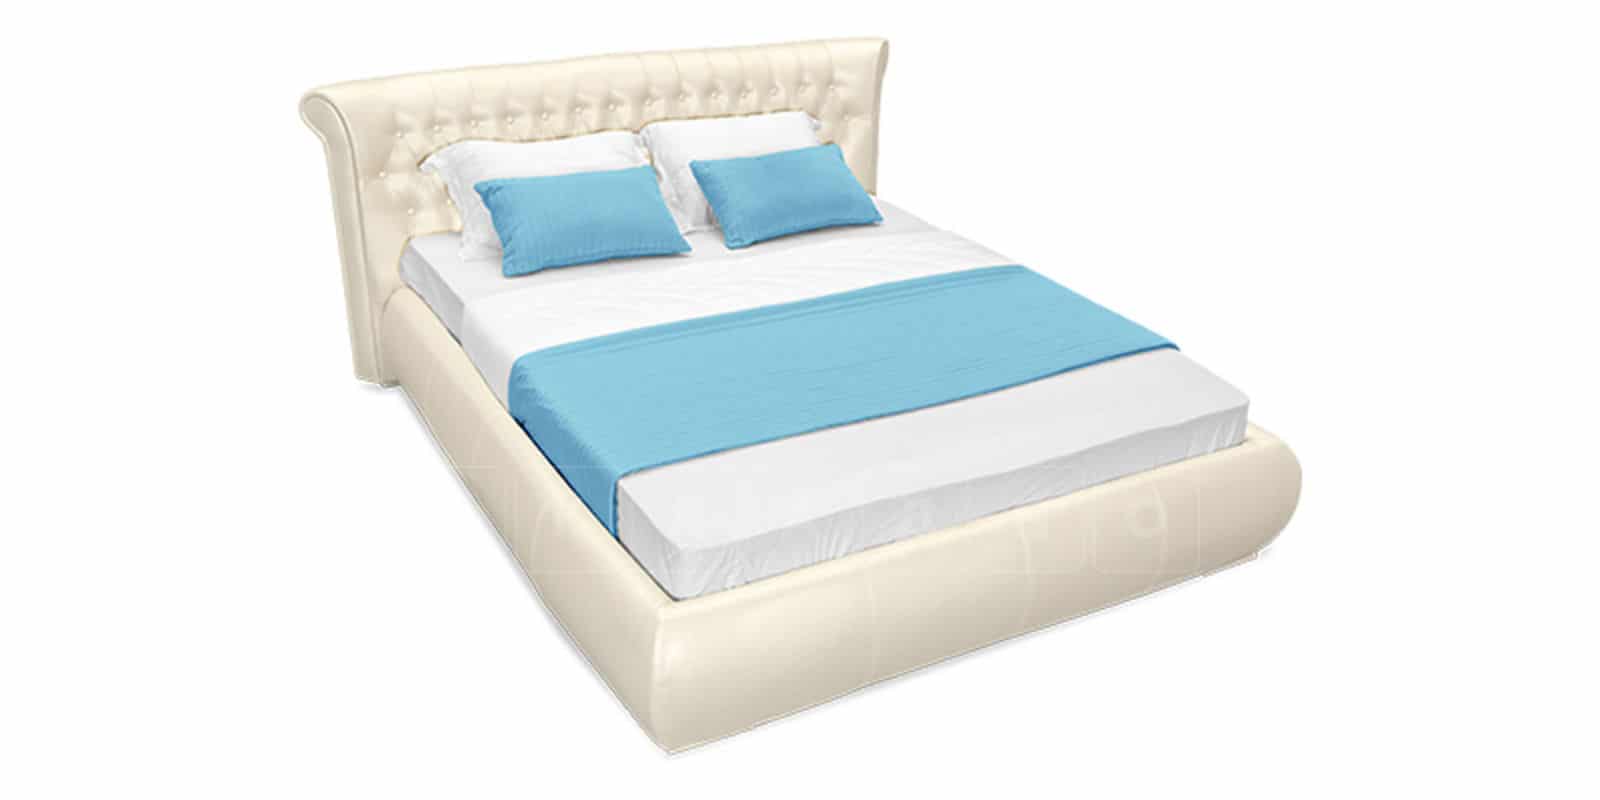 Мягкая кровать Вирджиния 160см экокожа перламутрового цвета фото 5 | интернет-магазин Складно